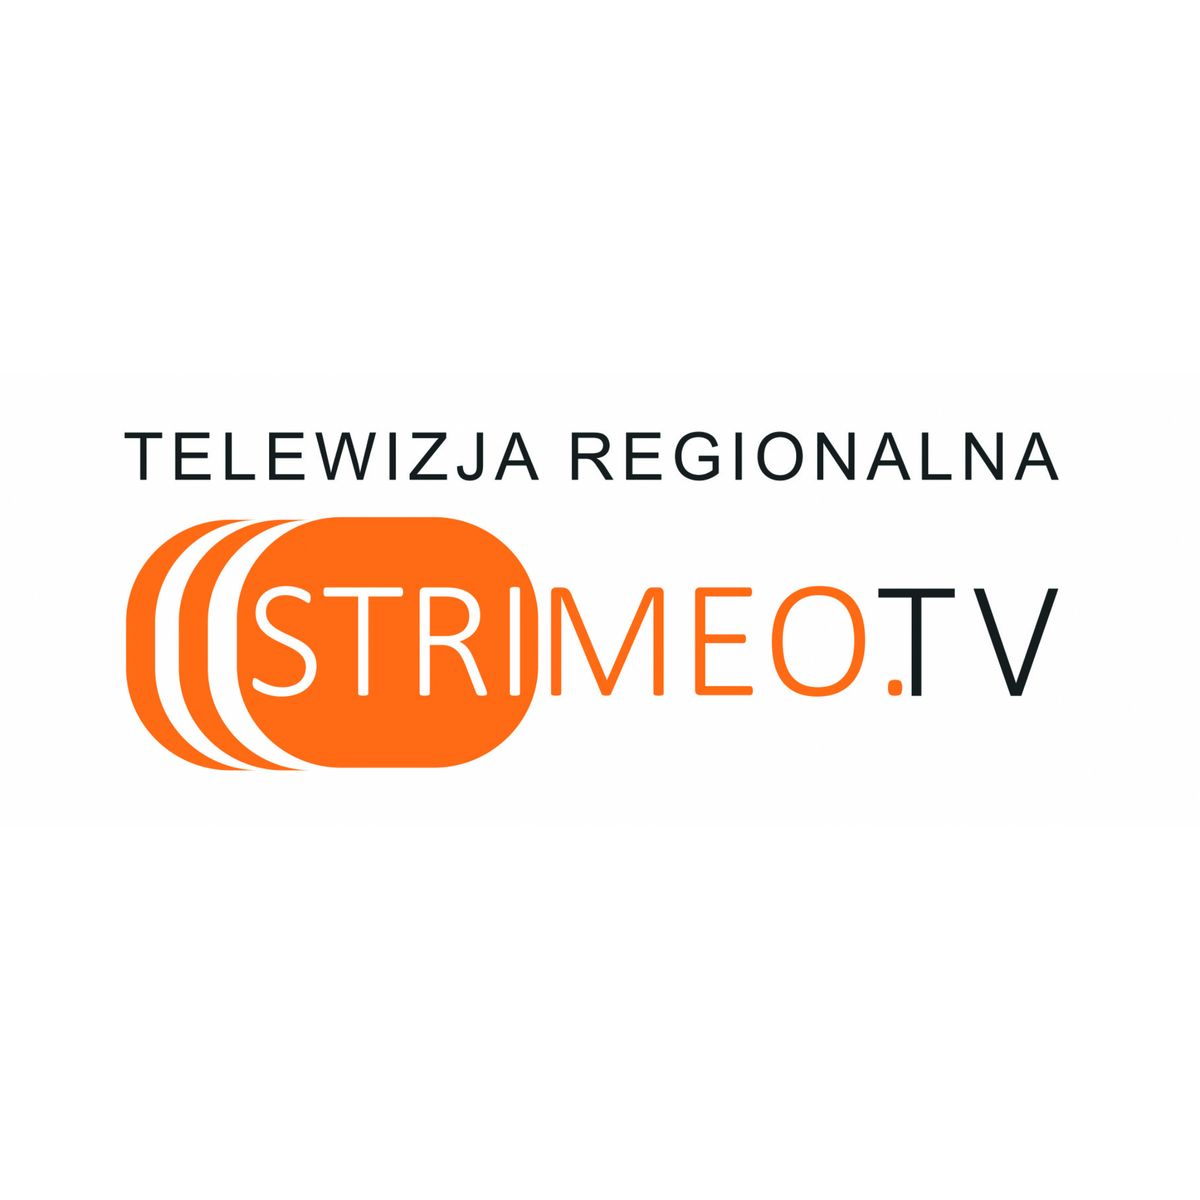 Strimeo TV